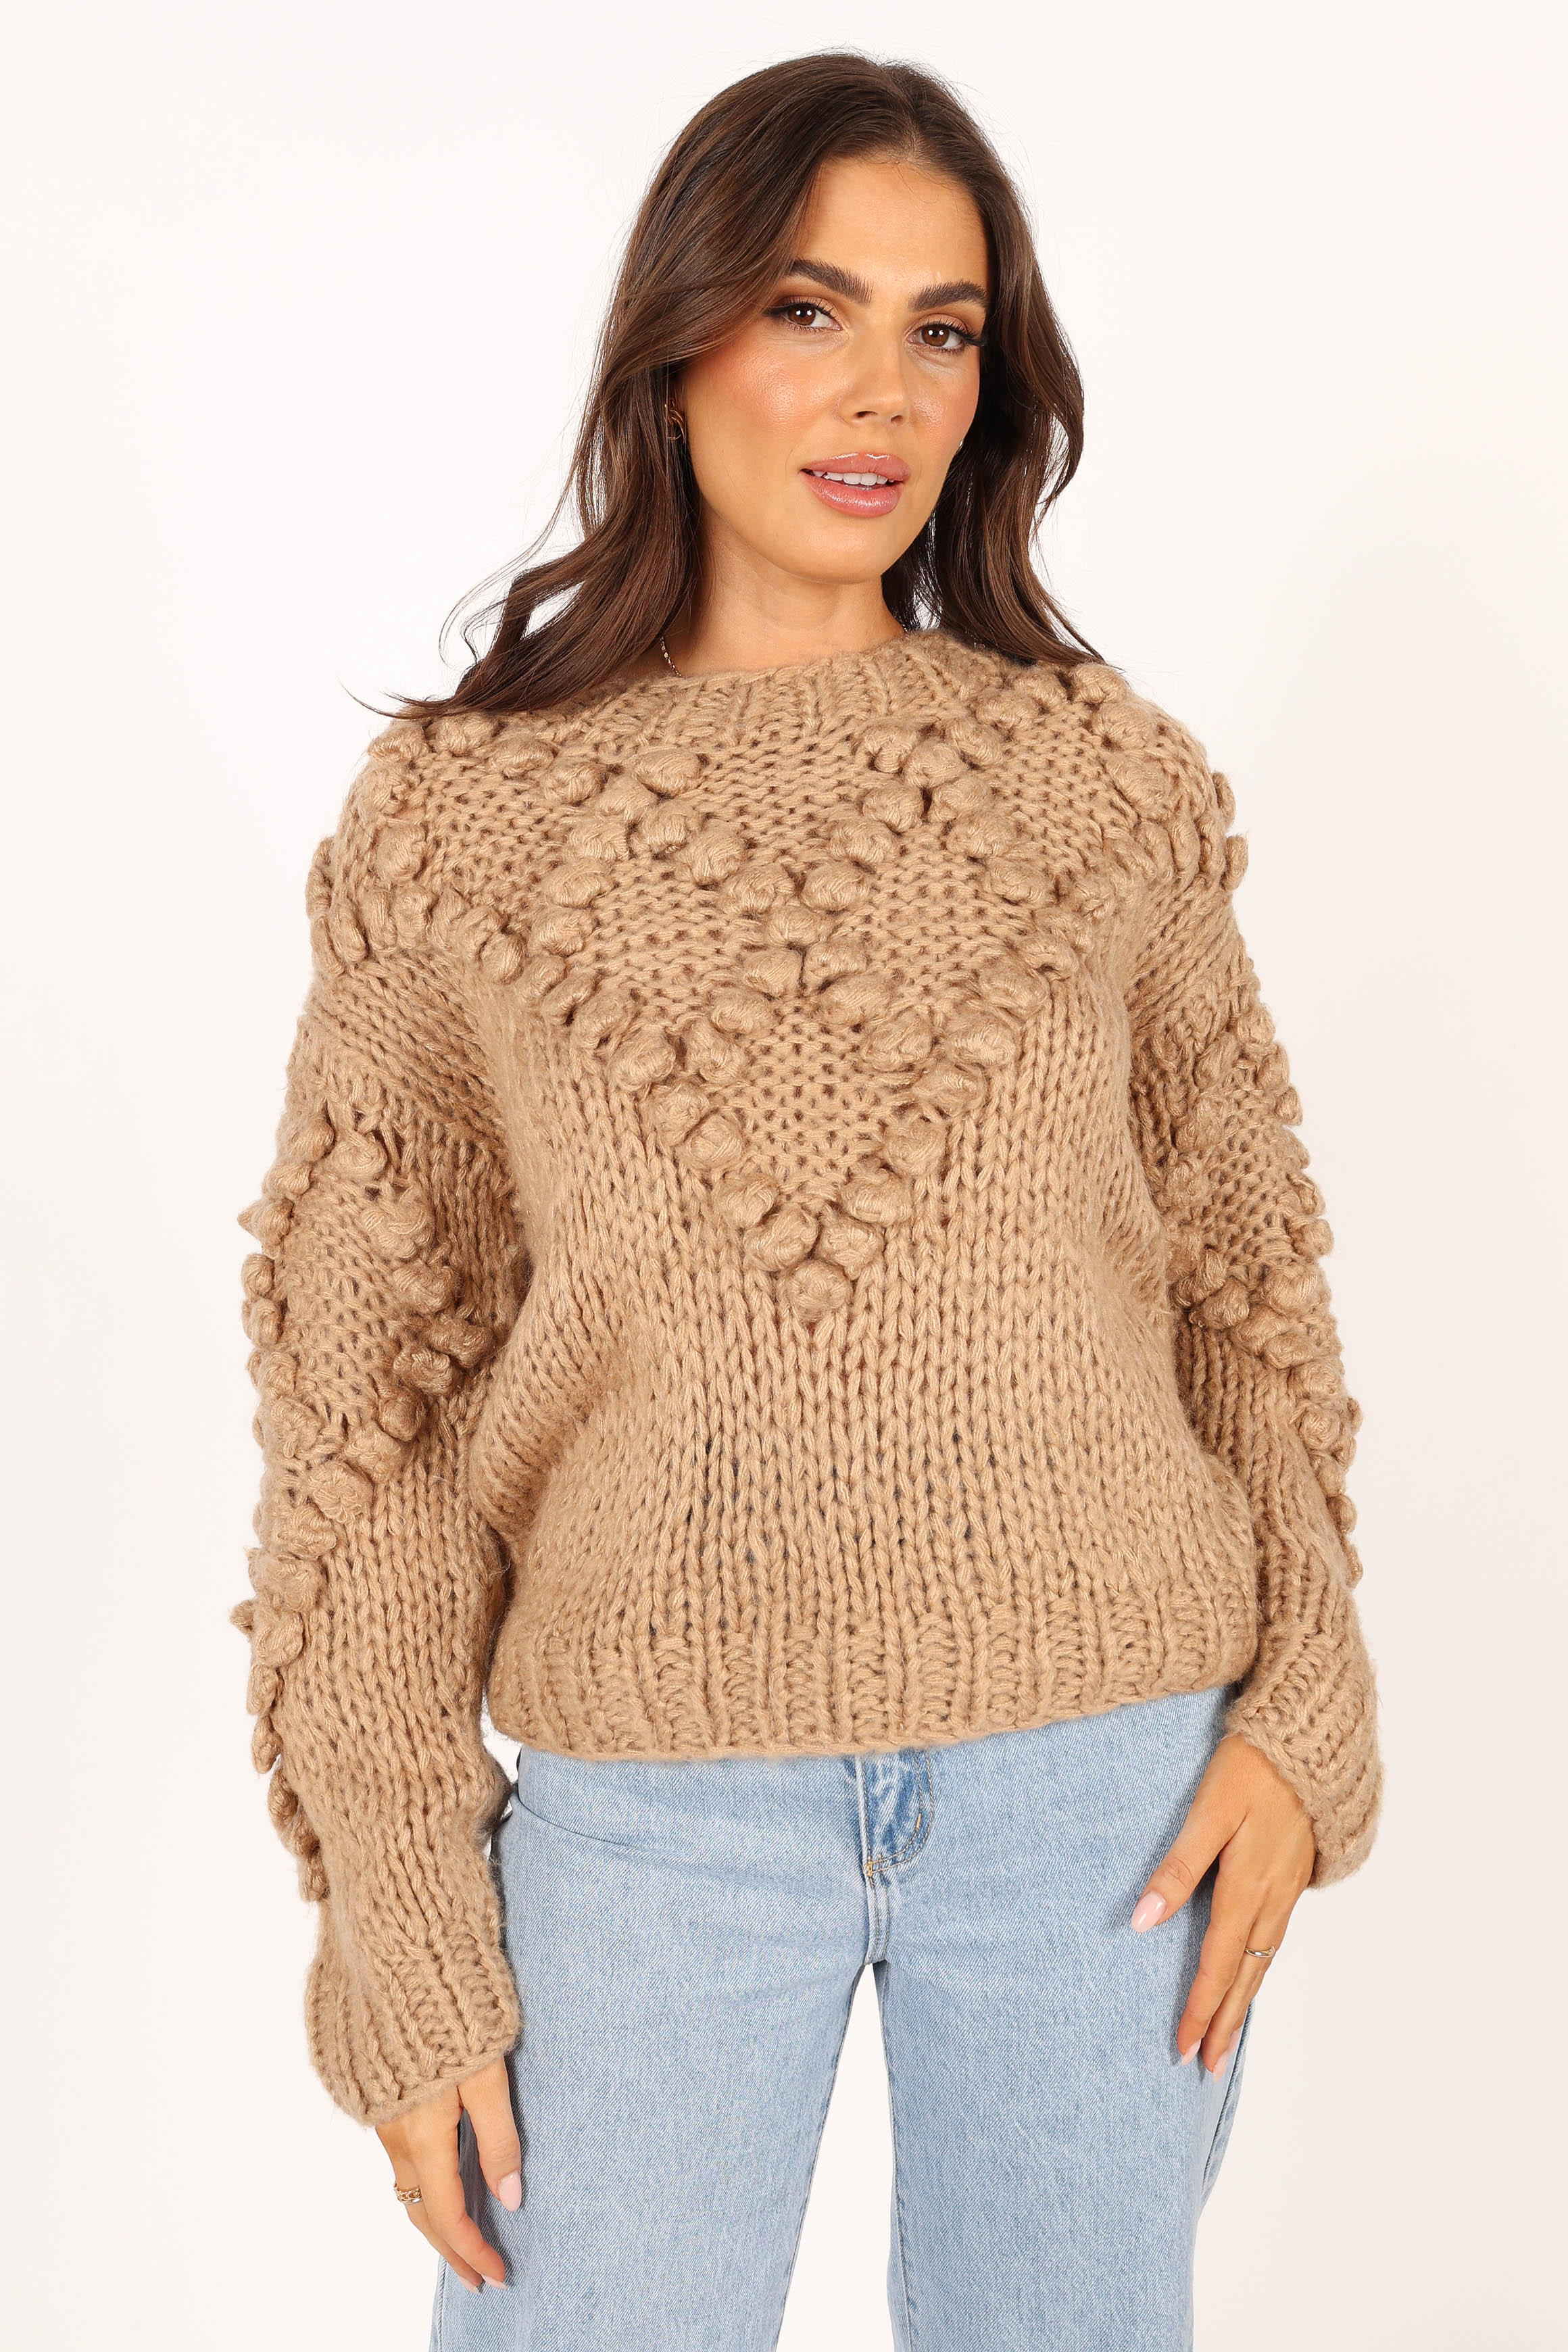 Vida Knit Sweater - Beige